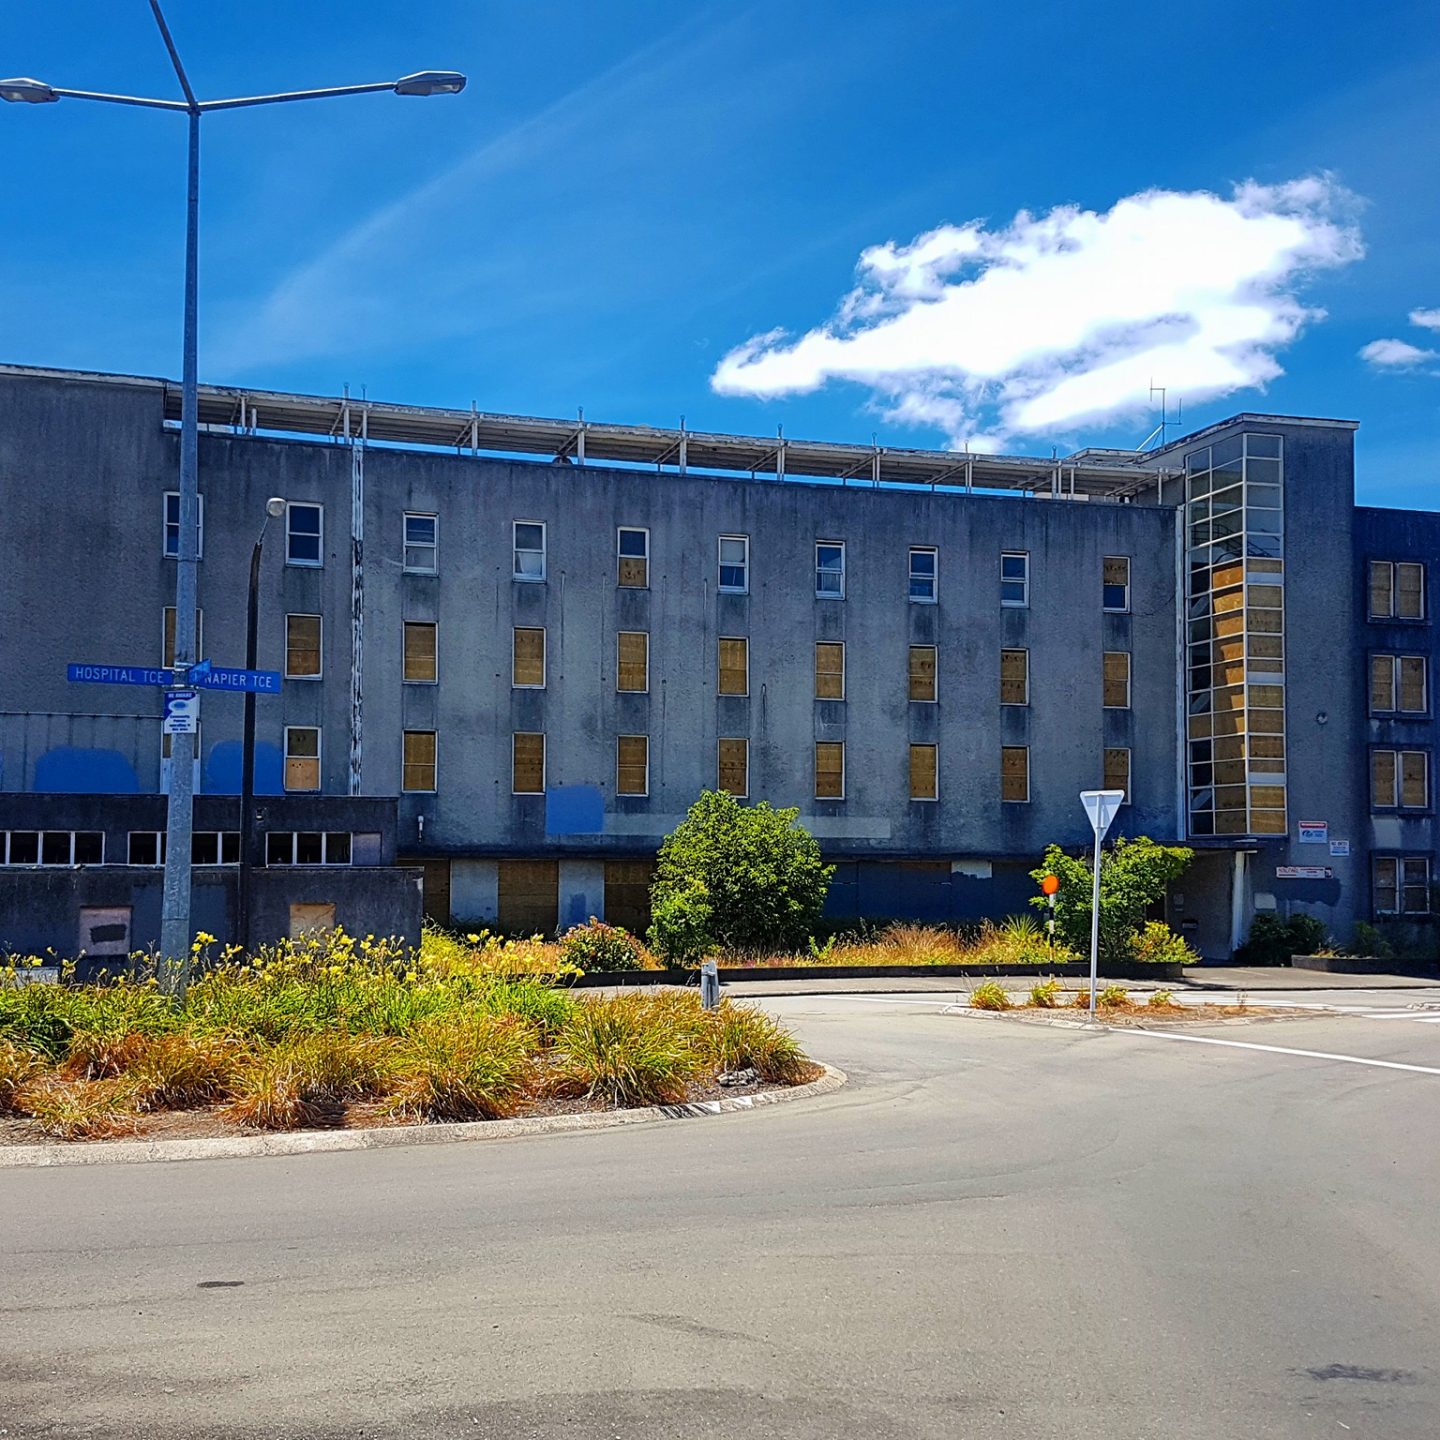 Old Napier Hospital – Napier